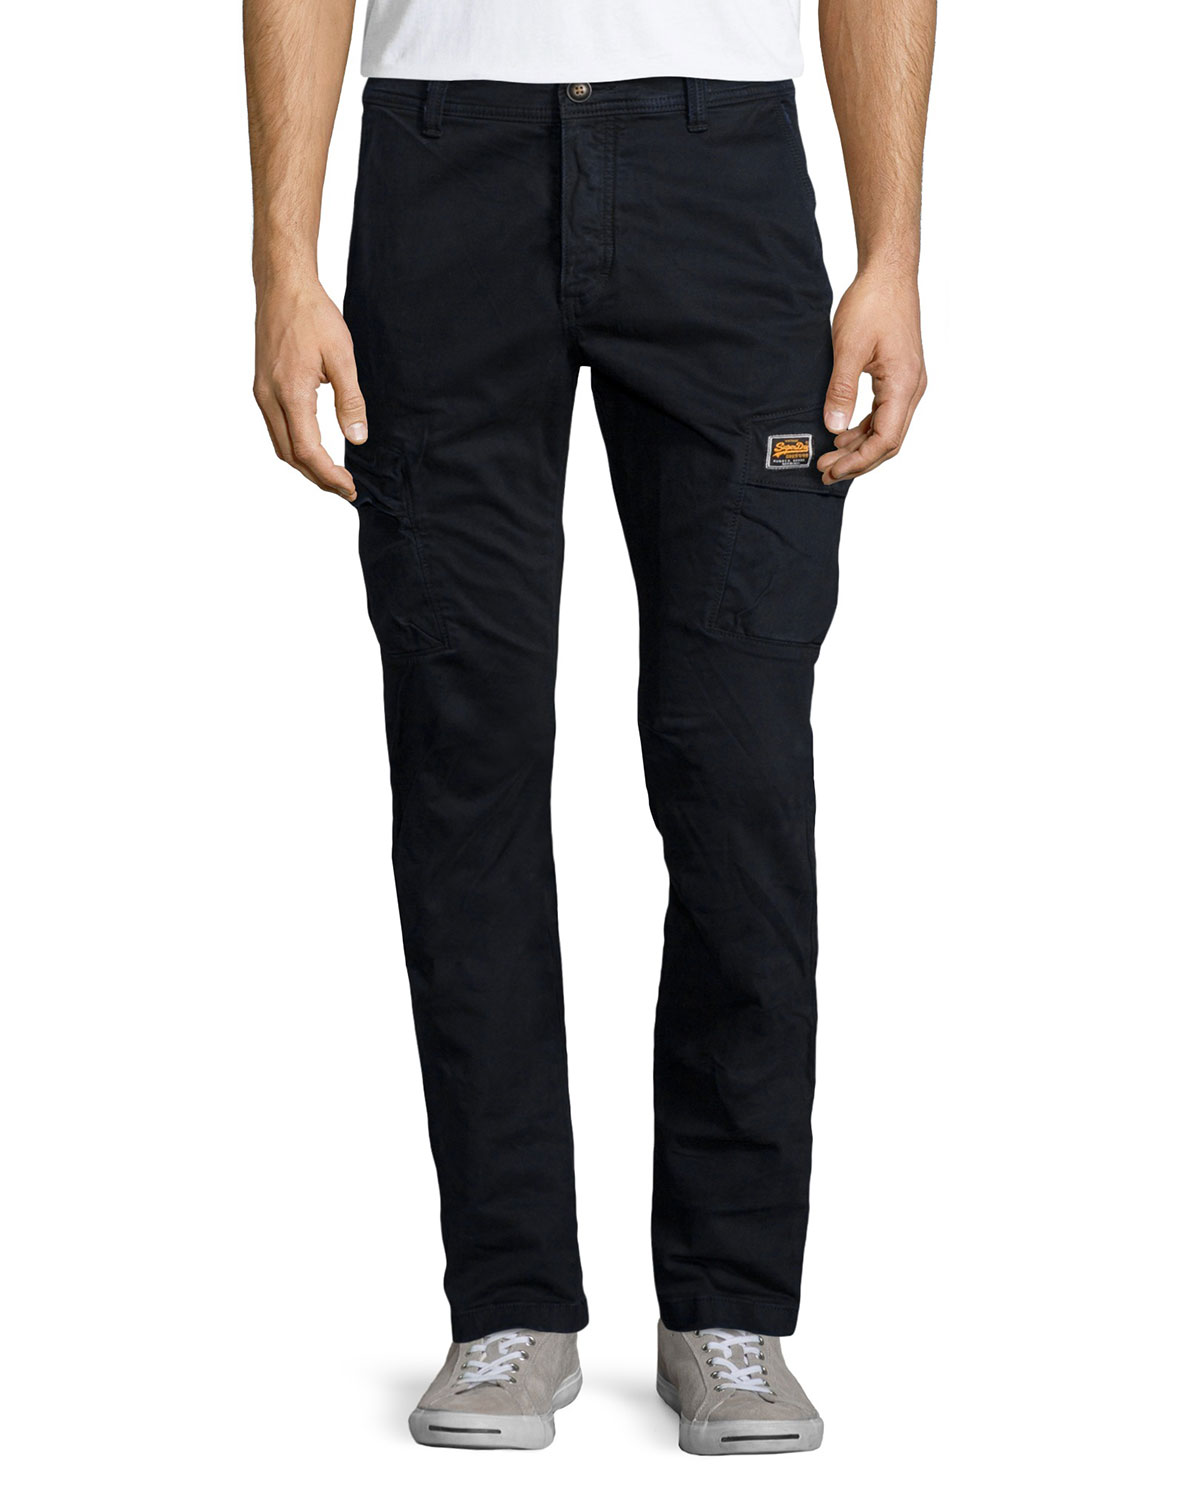 美國百分百【全新真品】Superdry 極度乾燥 工作褲 長褲 休閒褲 口袋 簡約 窄版 深藍色 S L XXL號 F490